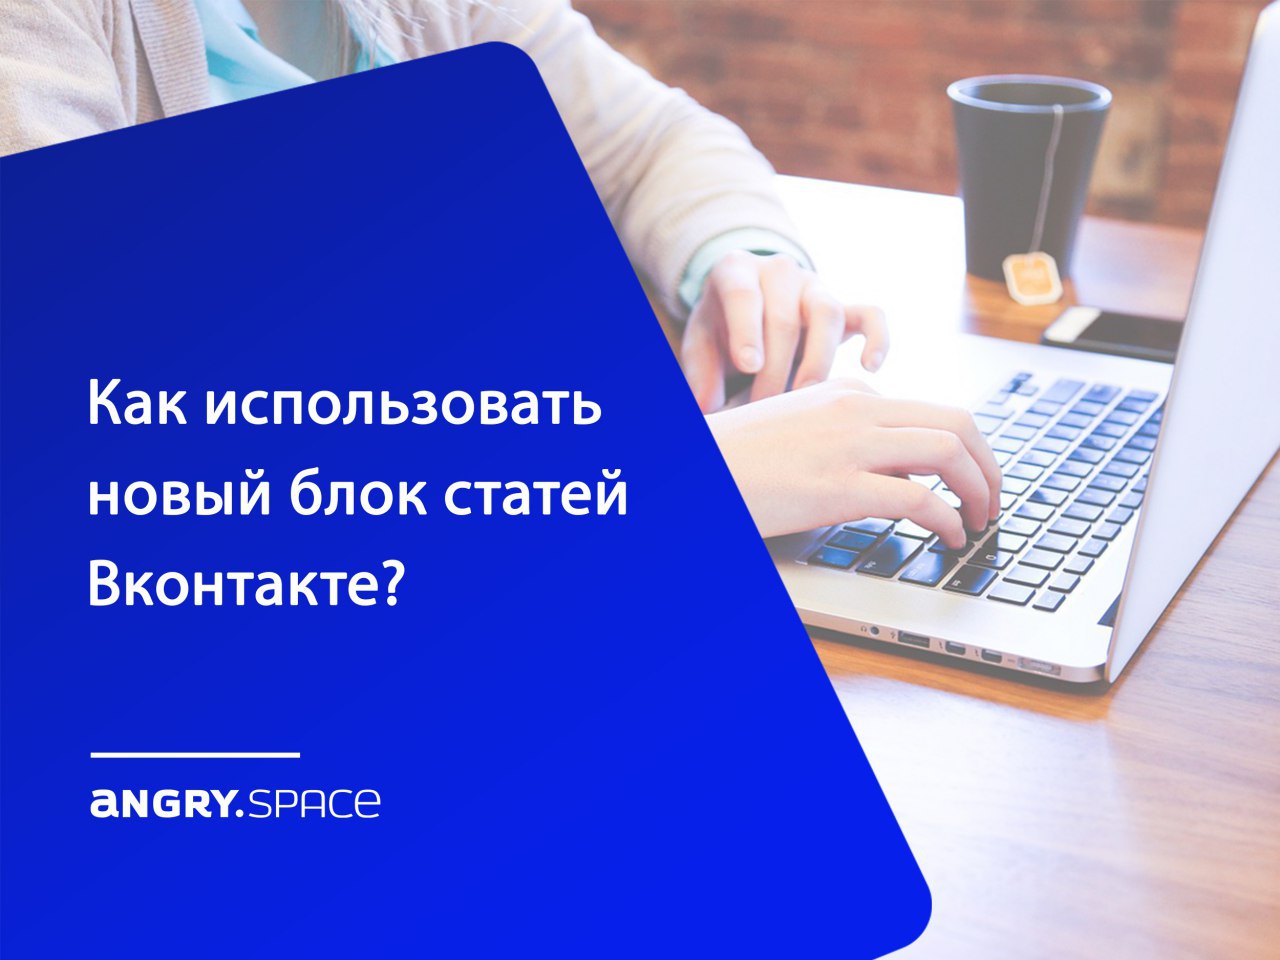 Как использовать новый блок статей Вконтакте?